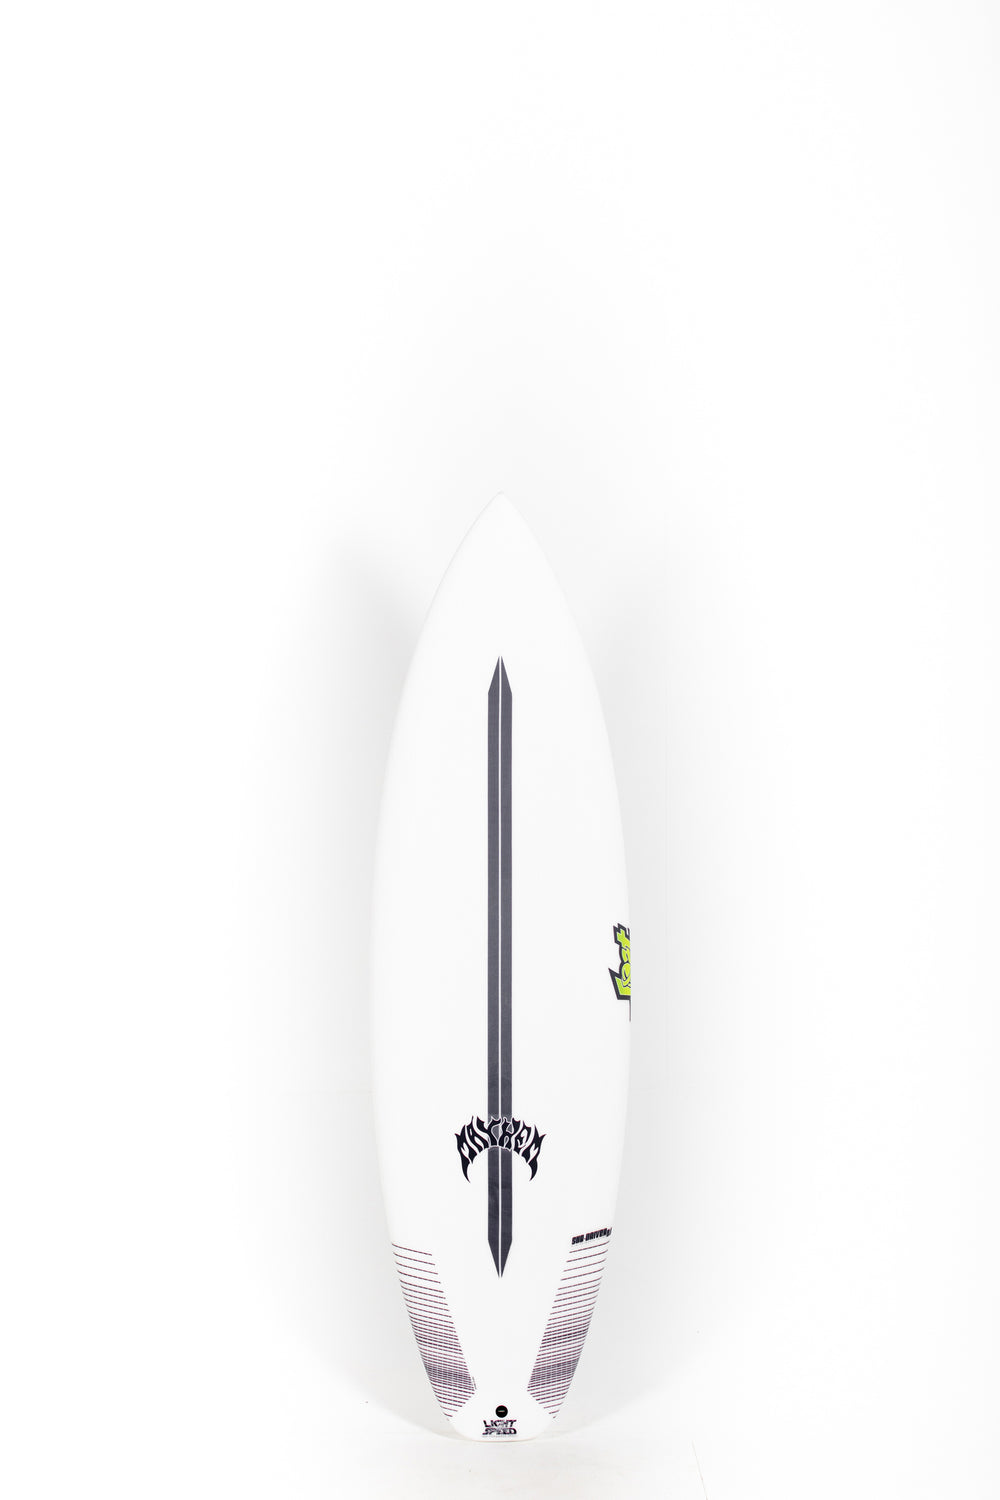 Pukas Surf Shop - Lost Surfboard - SUB DRIVER 2.0 by Matt Biolos - Light Speed - 5’10” x 19,5 x 2,44 - 30L